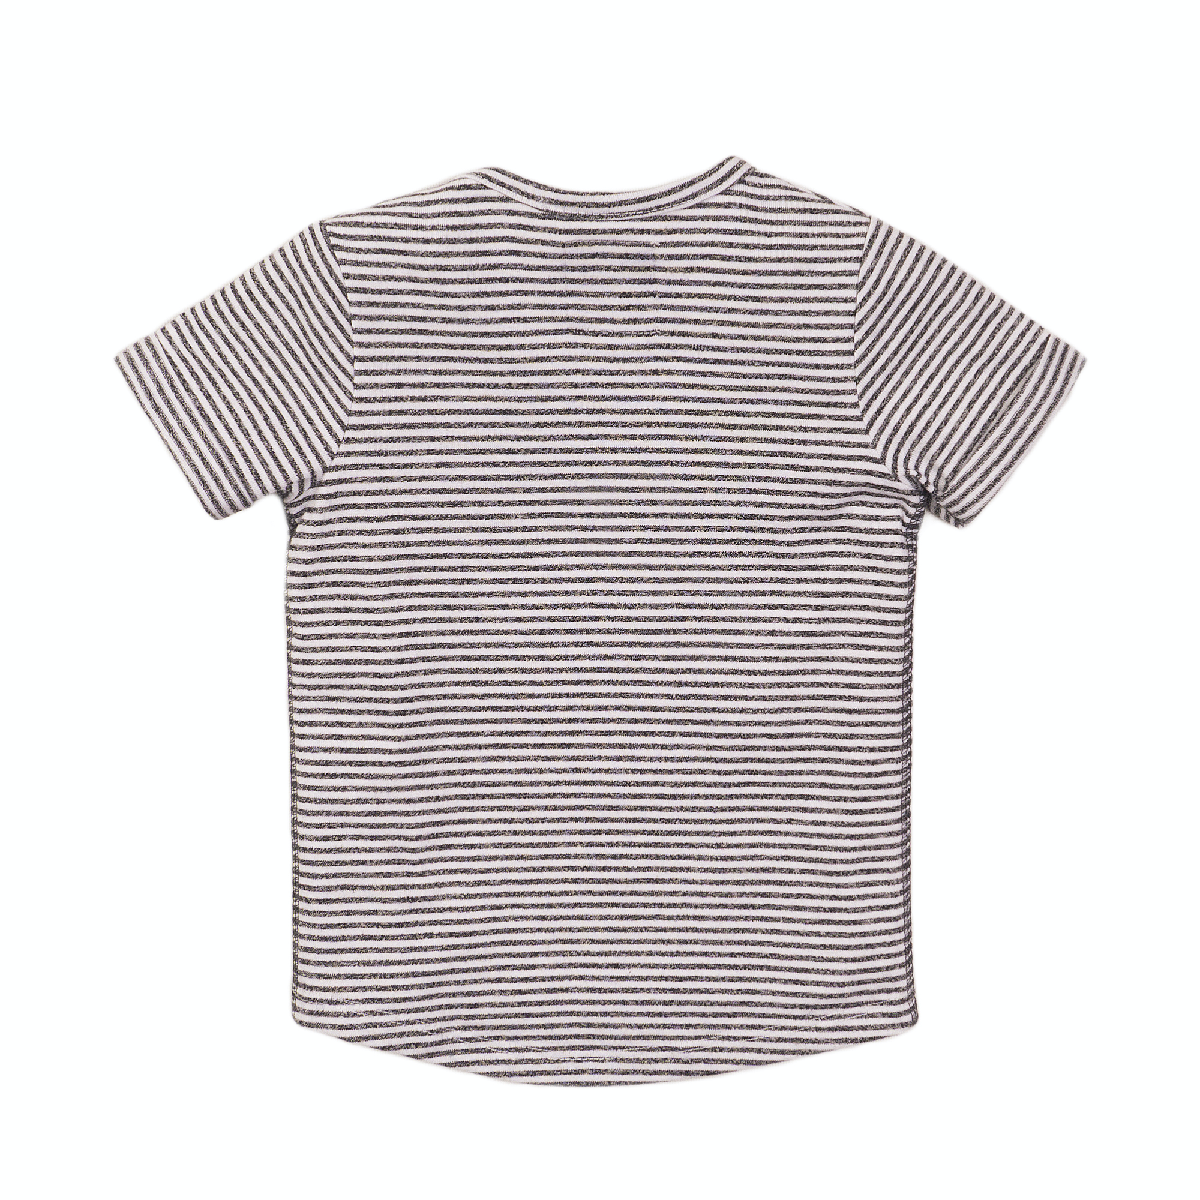 Koko Noko T-shirt small stripes